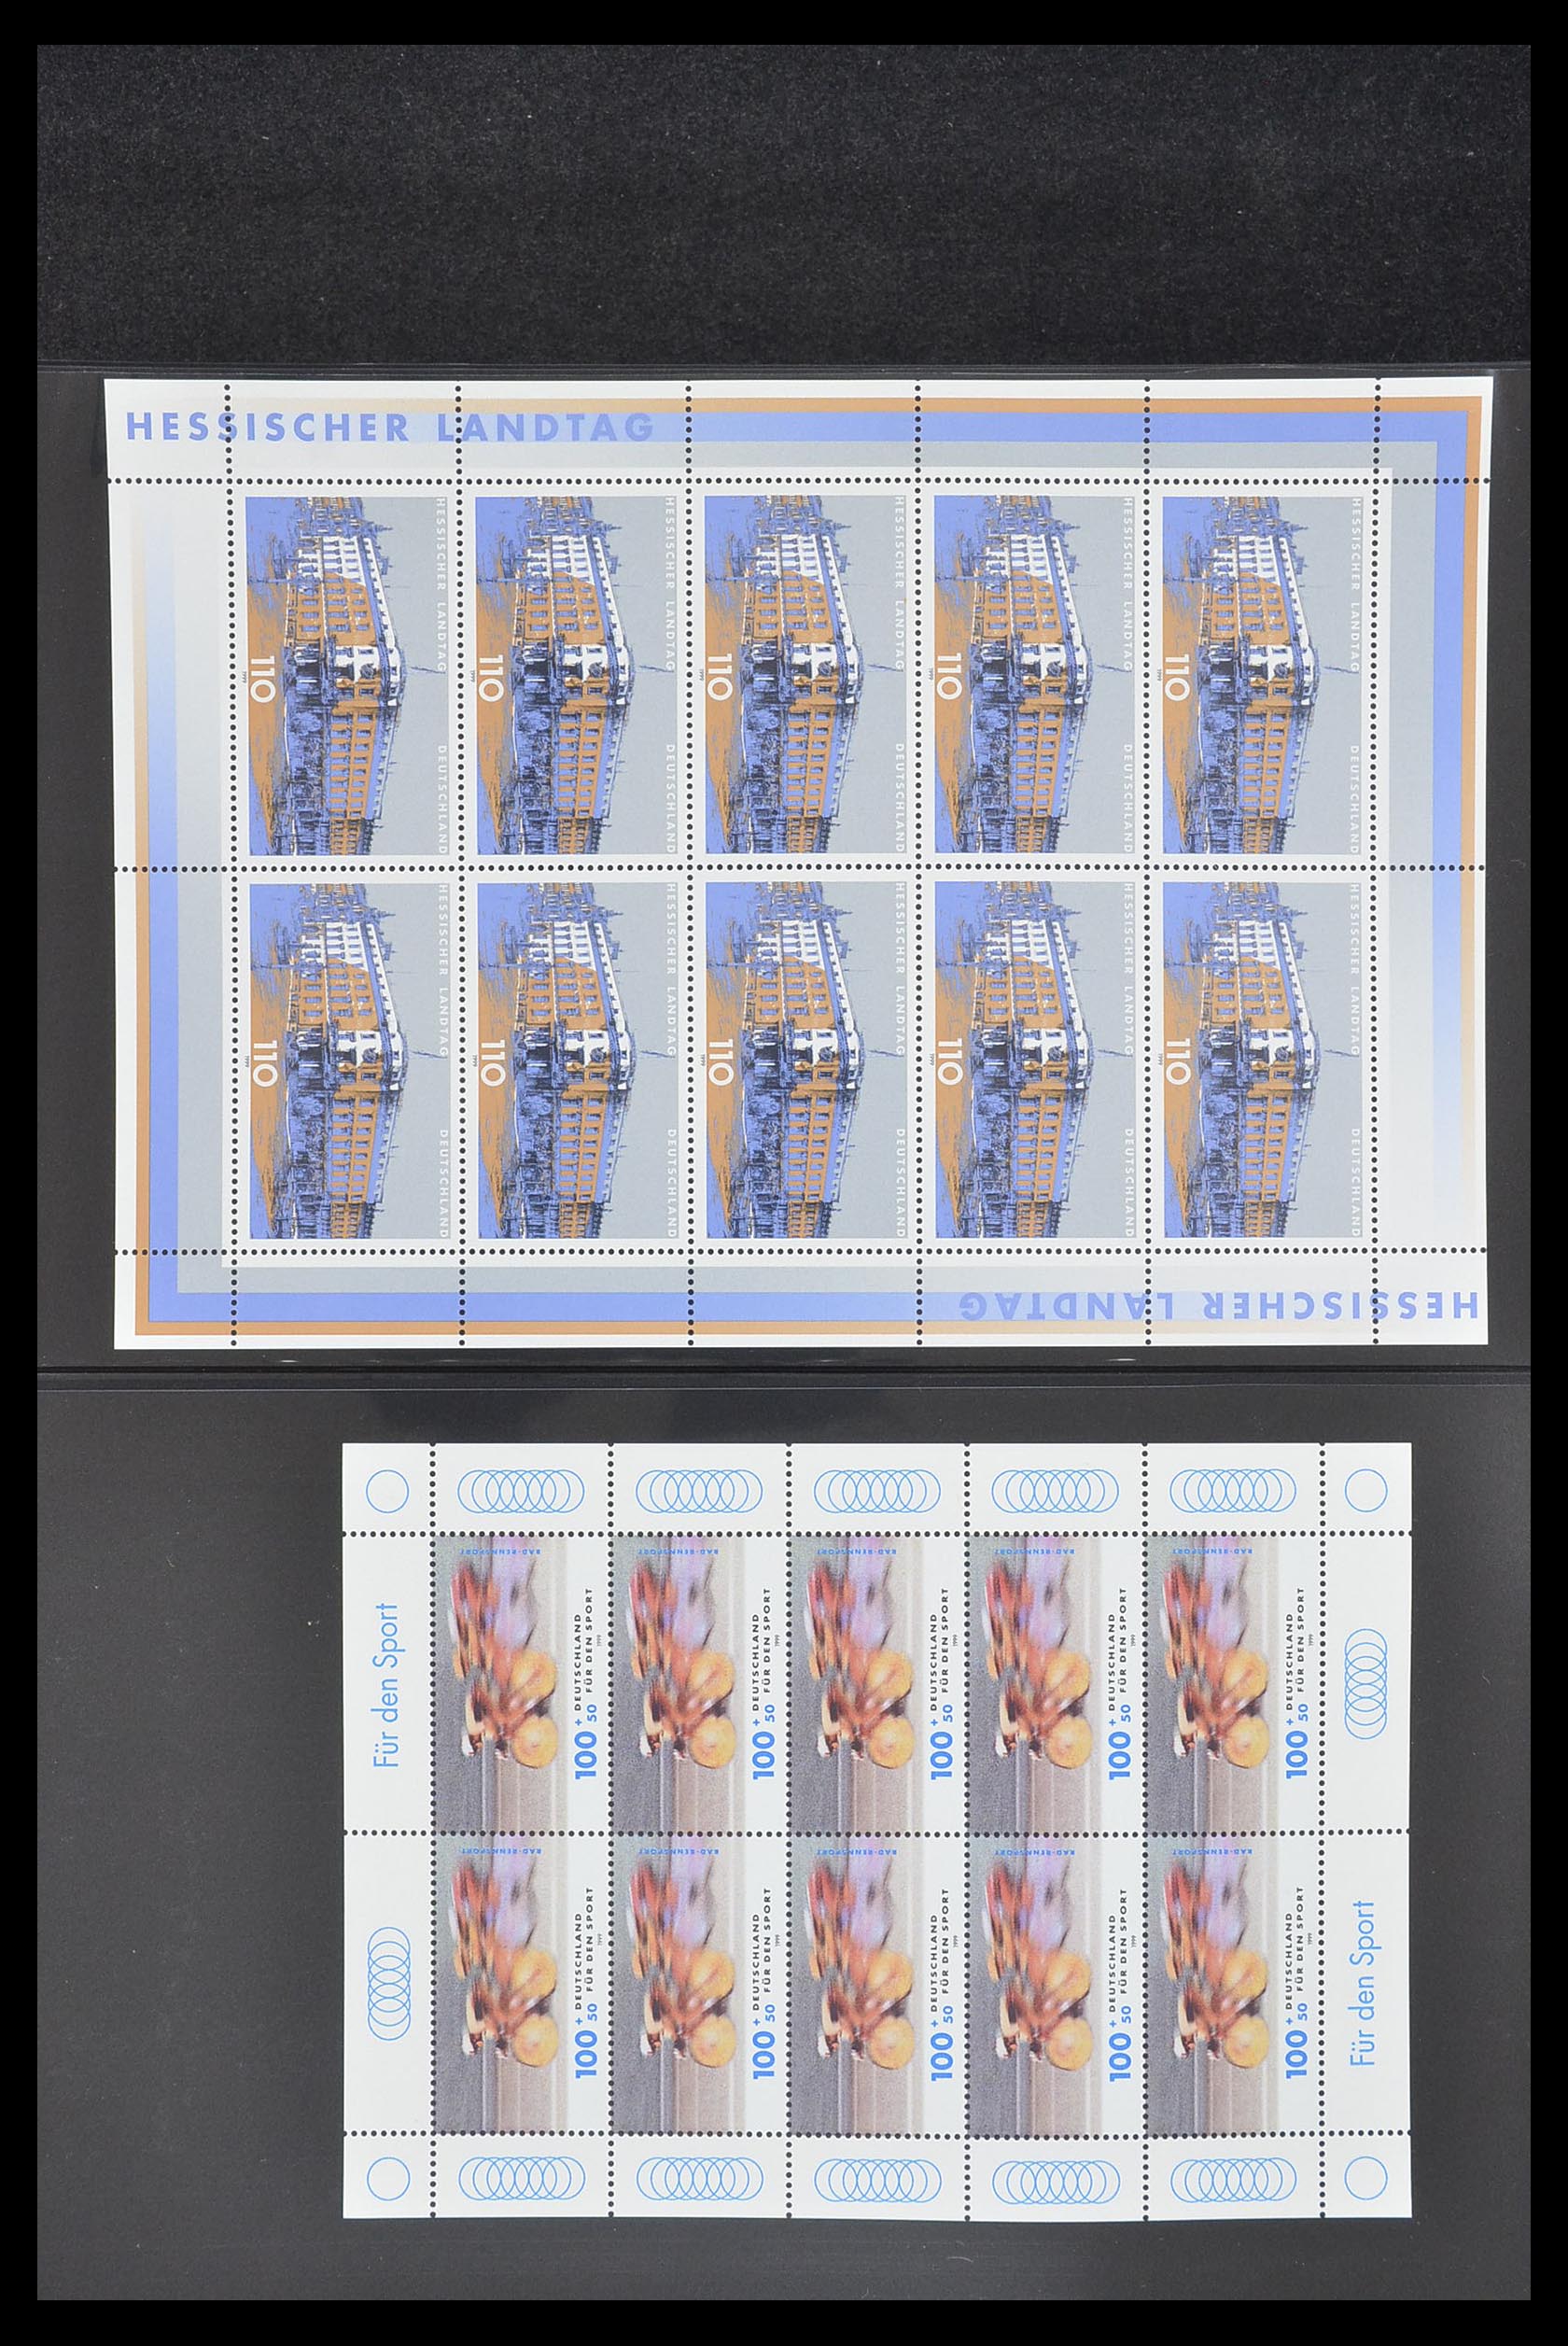 33936 123 - Stamp collection 33936 Bundespost kleinbogen 1994-2000.